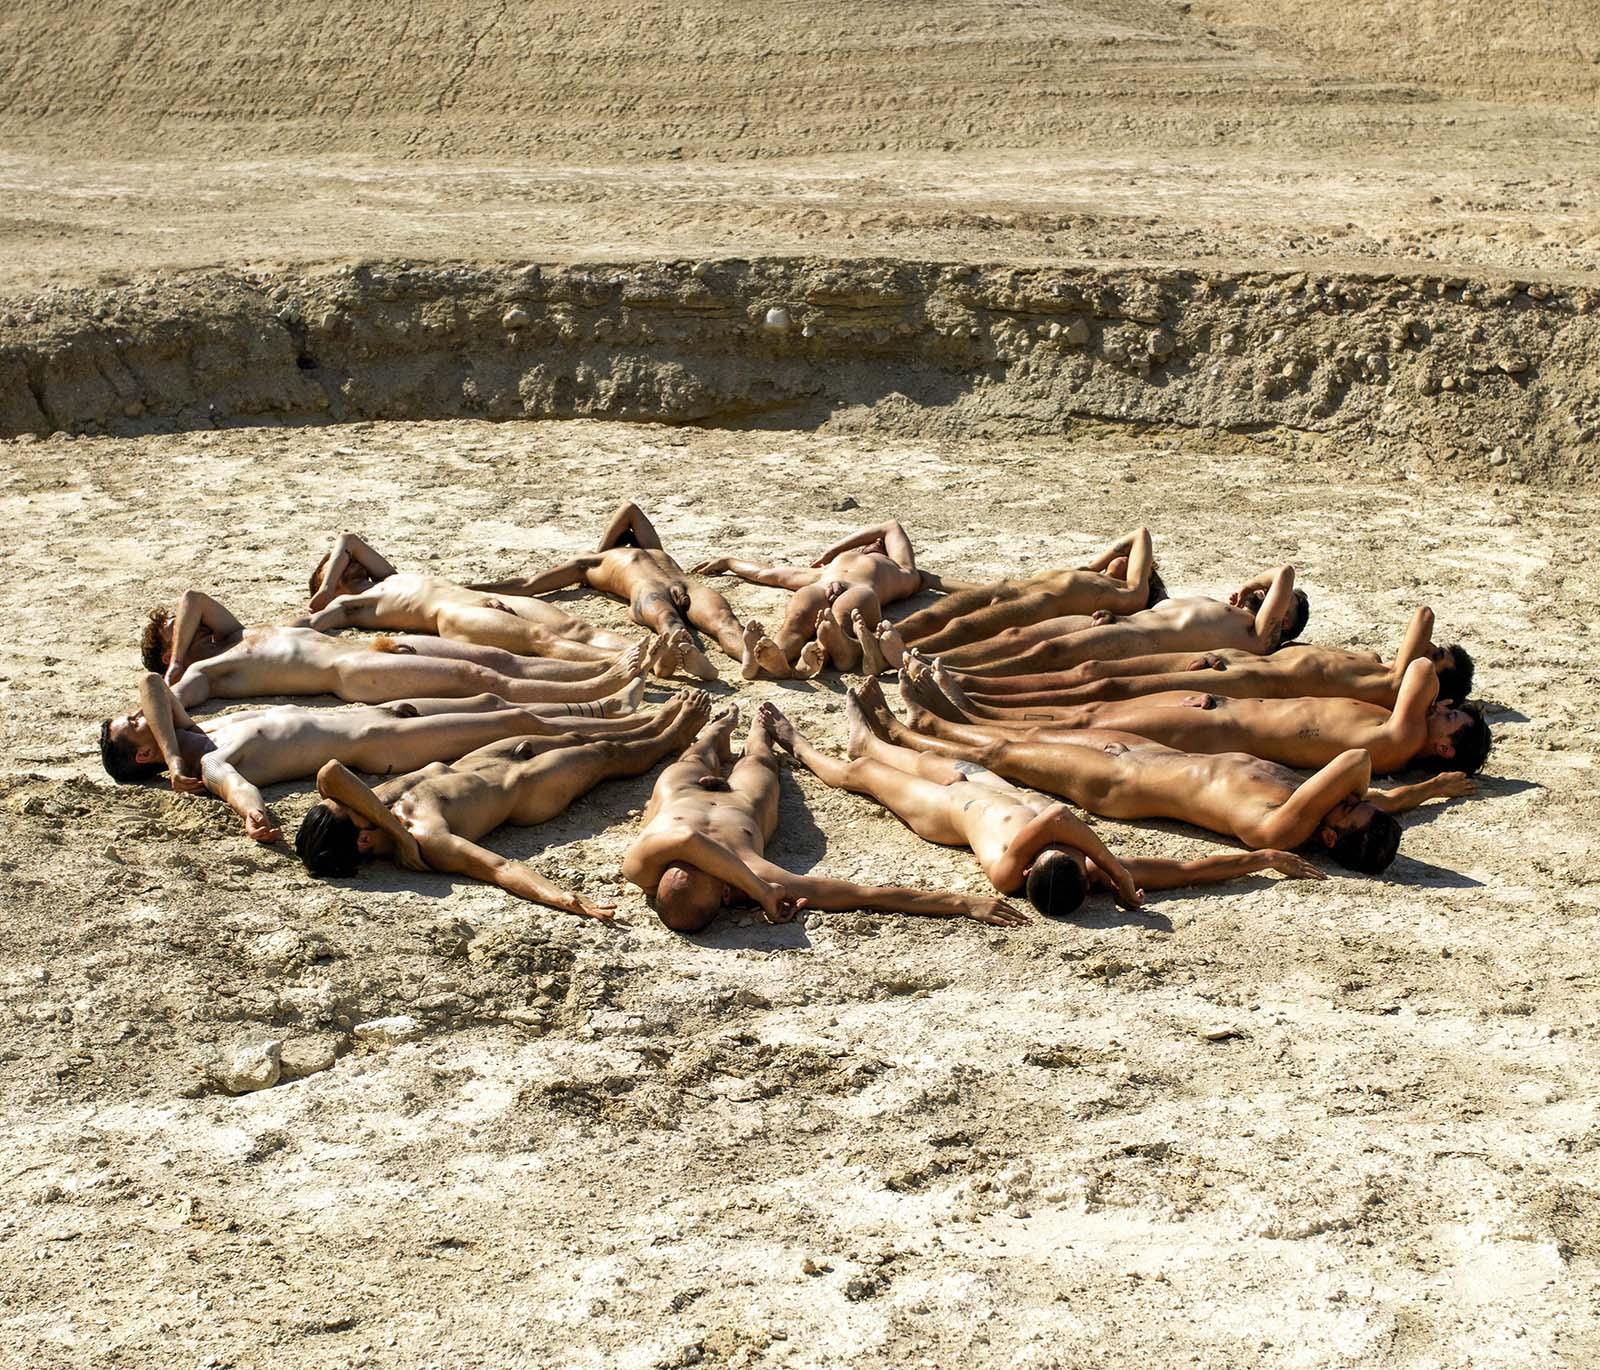 Cercle de nuit Bon Fire (13 hommes totalement nus disposés en cercle dans le désert) - Surréalisme Photograph par Omer Ga'ash